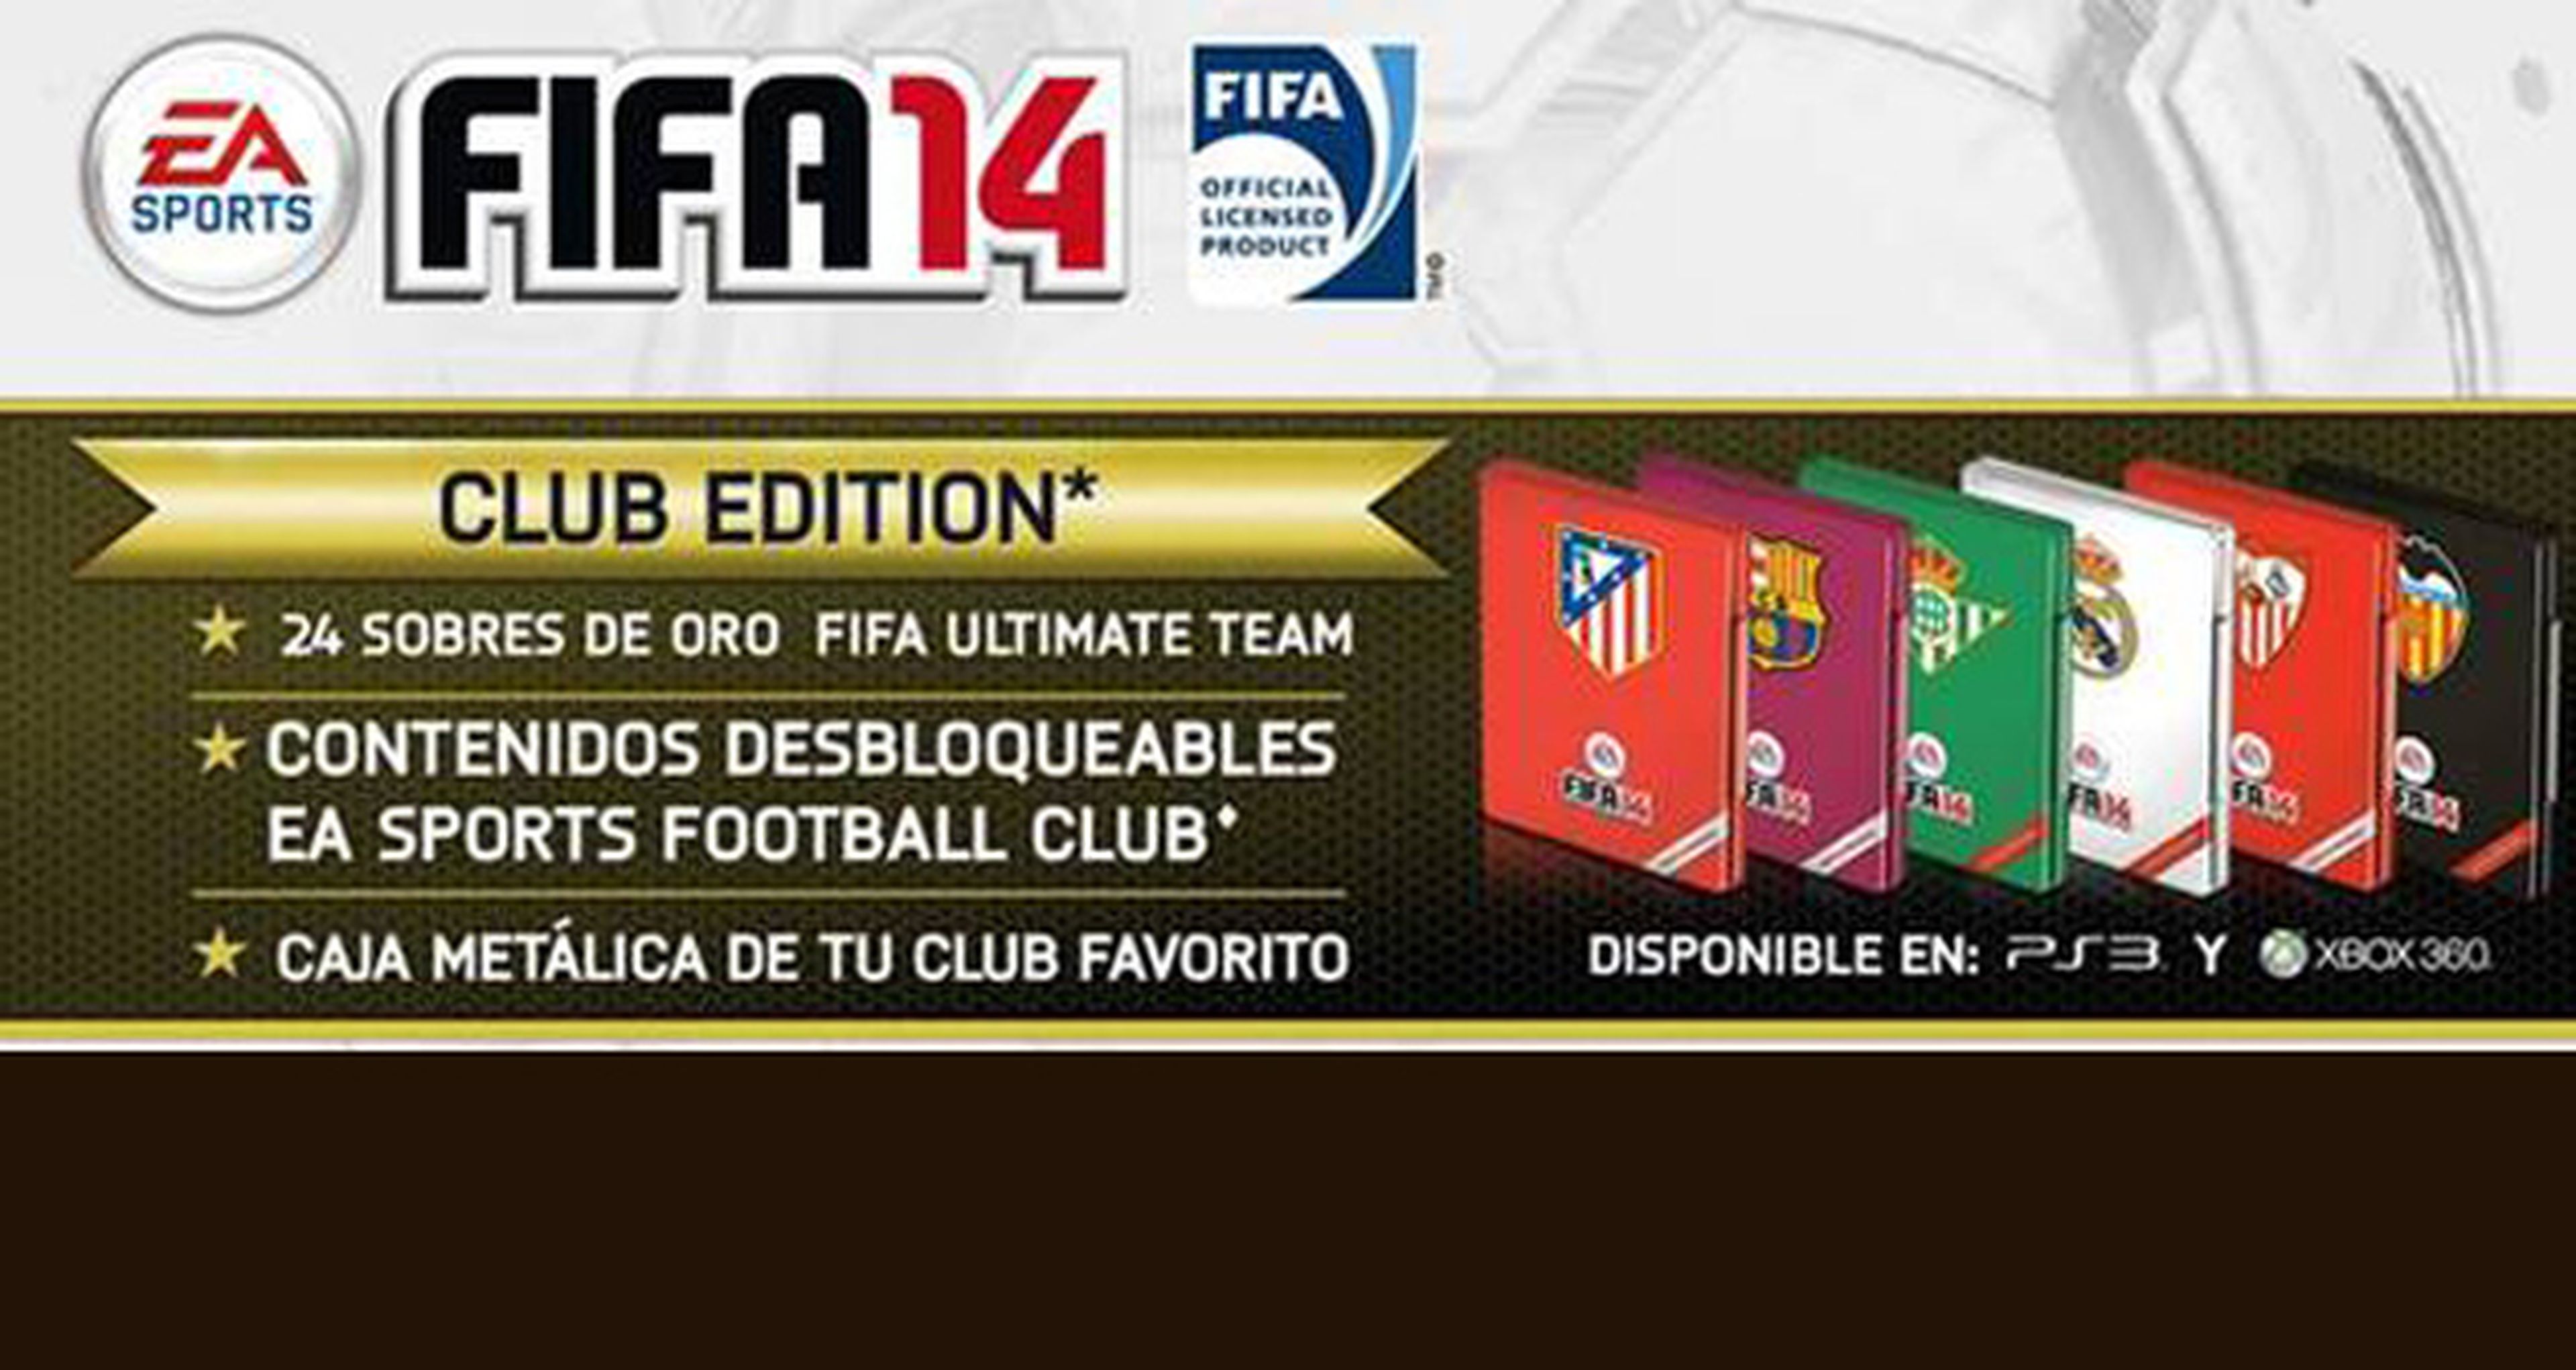 Incentivos de reserva de FIFA 14 Club Edition